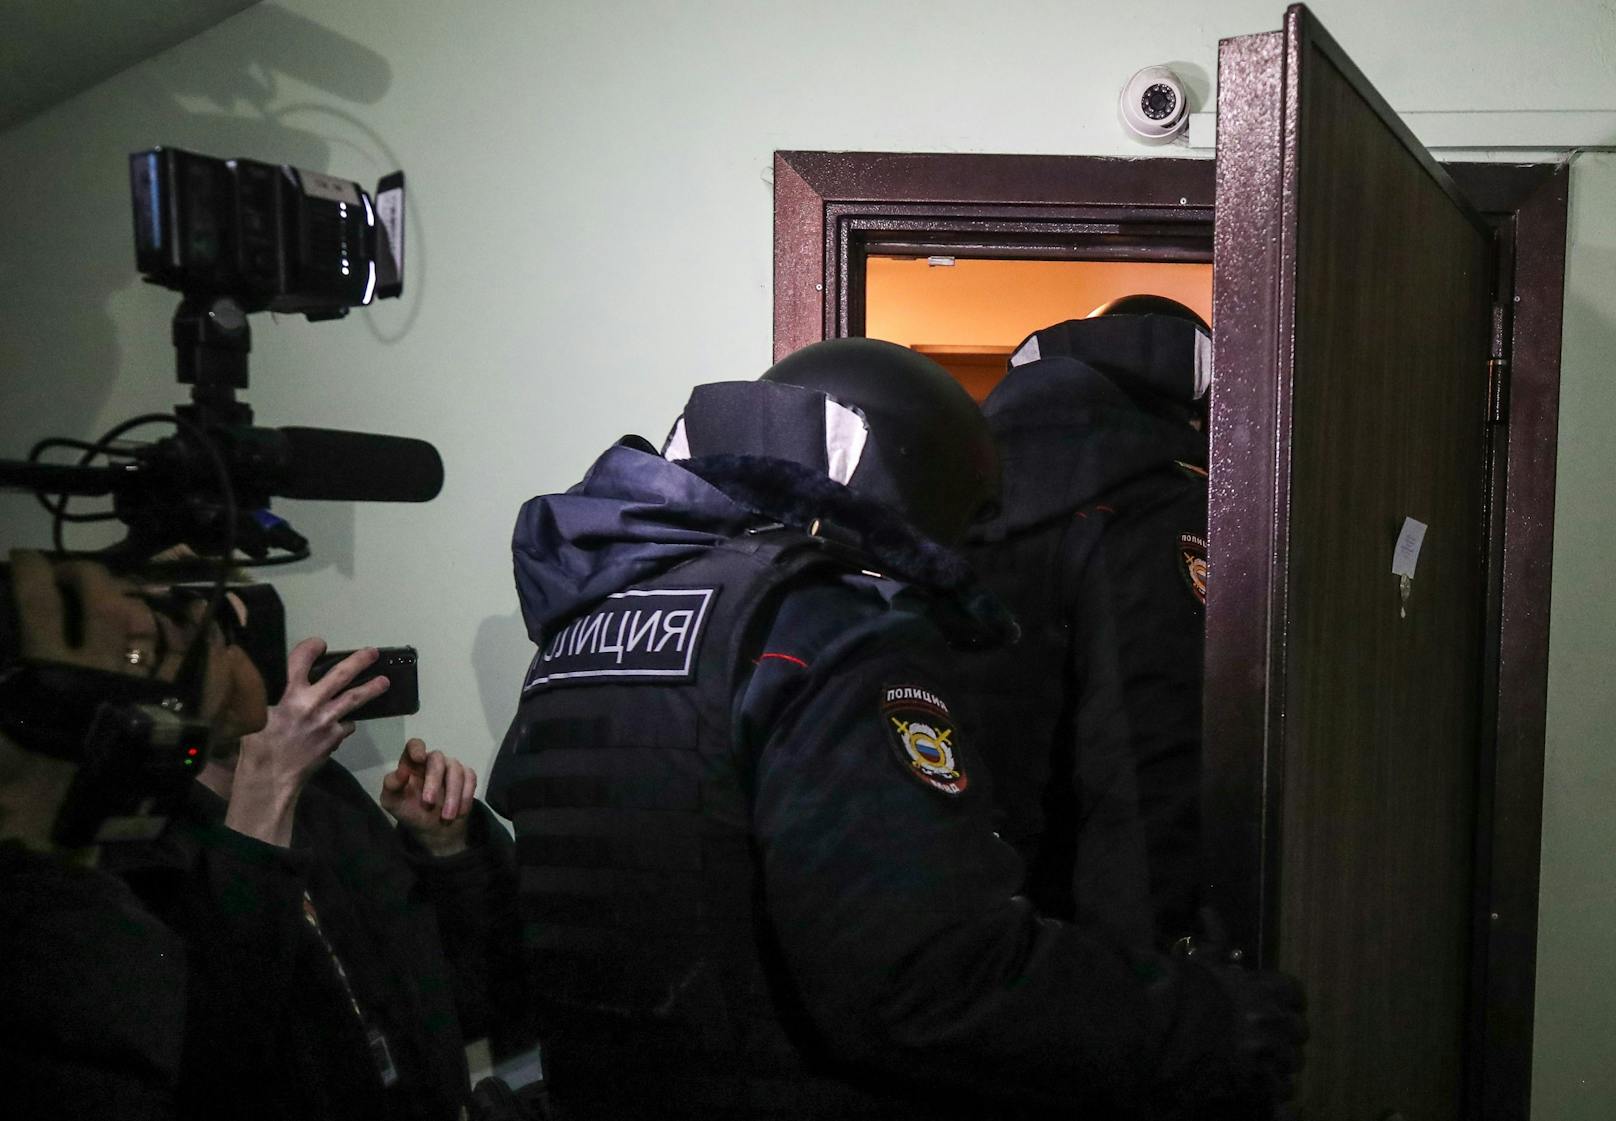 Auch eine von Alexei Nawalnys Frau Yulia bewohnte Wohnung wurde durchsucht.